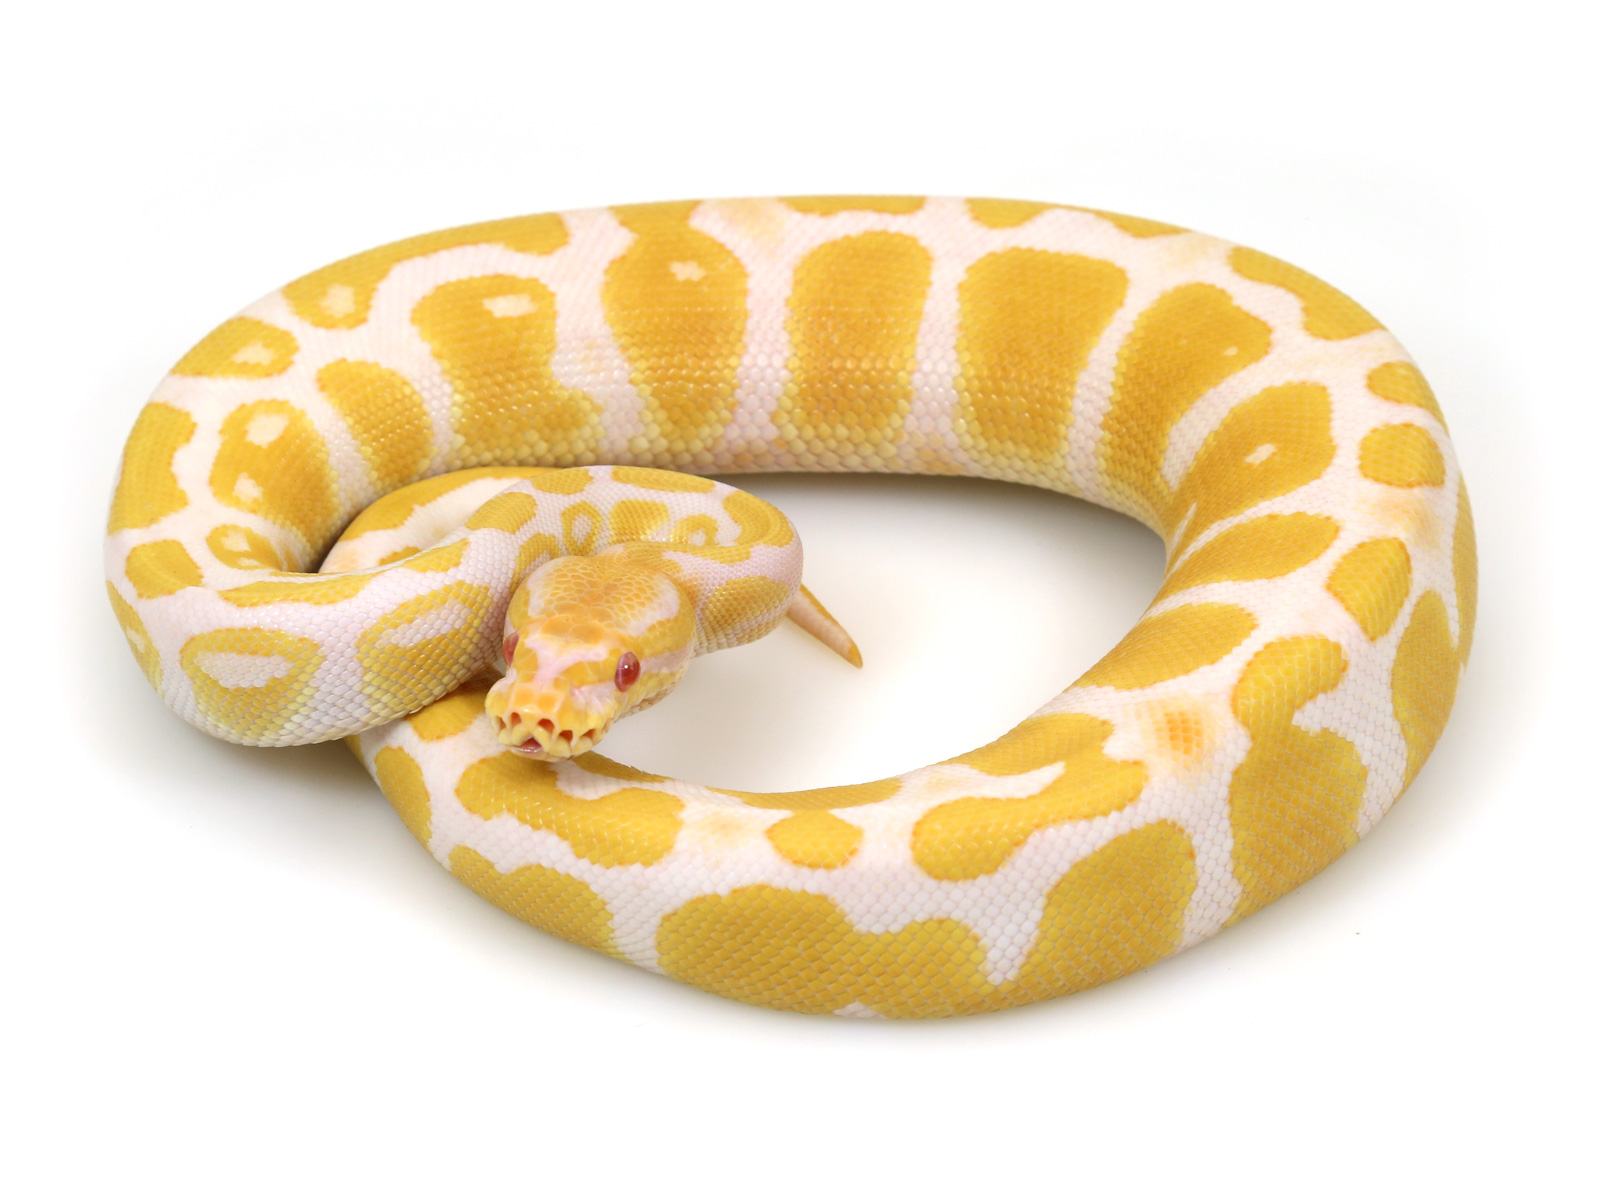 ball python, albino java